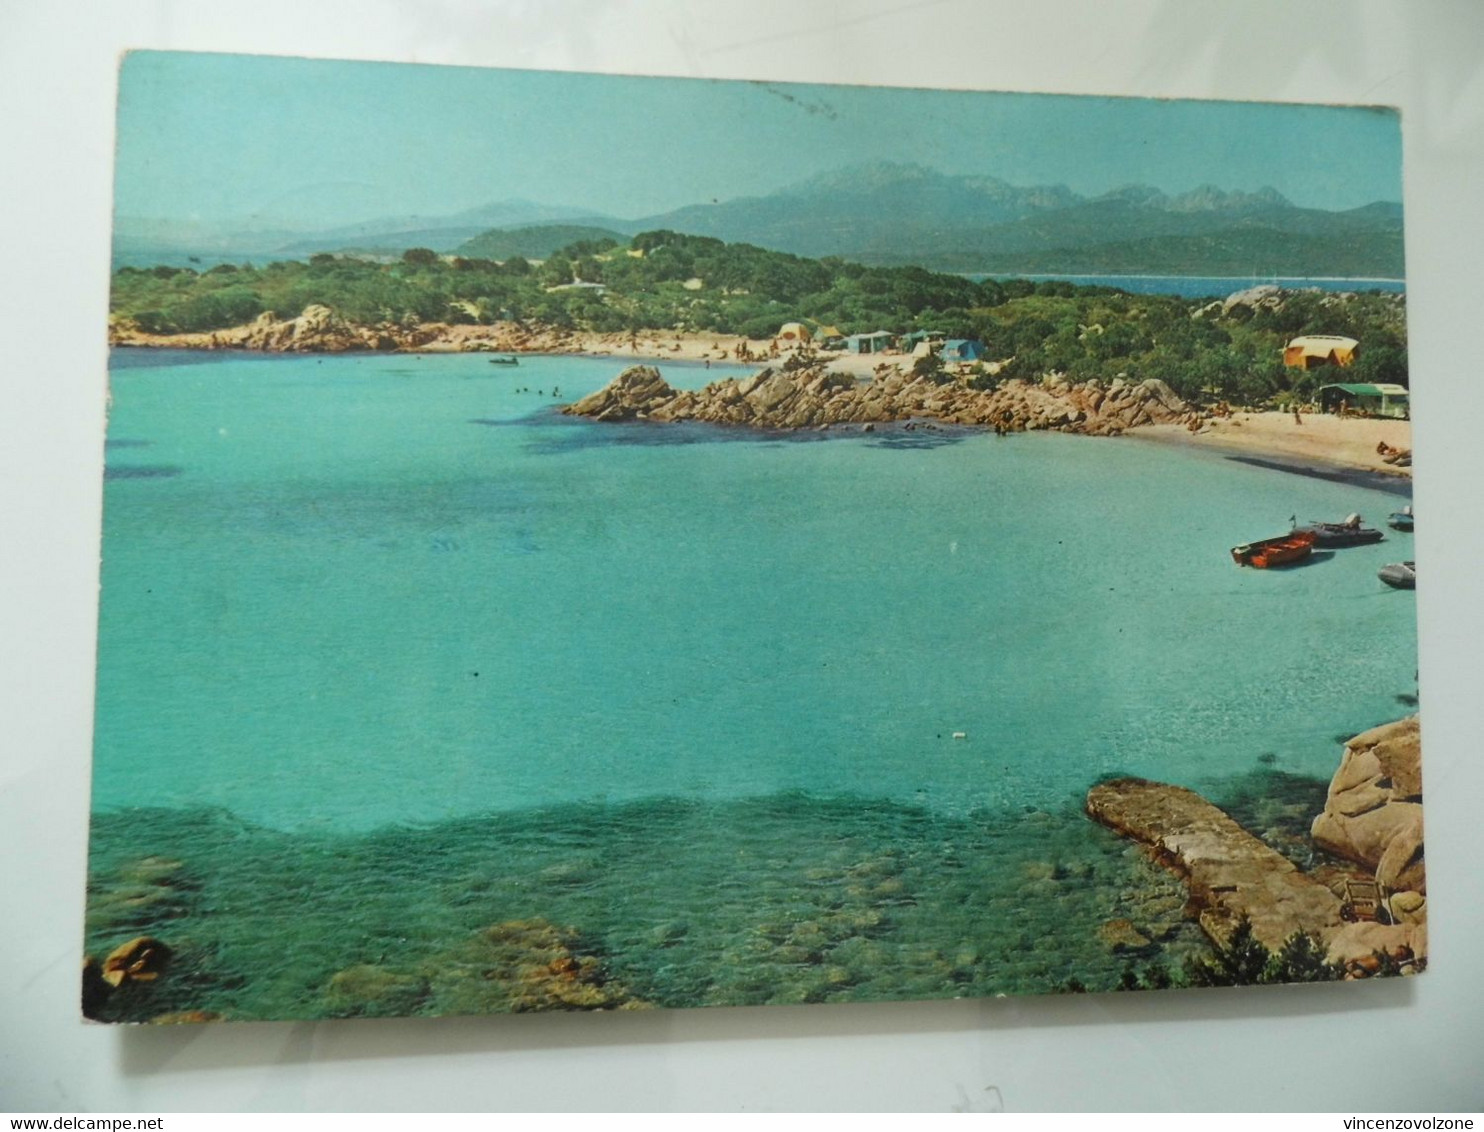 Cartolina Viaggiata "Costa Smeralda  CAPRICCIOLI" 1970 - Olbia